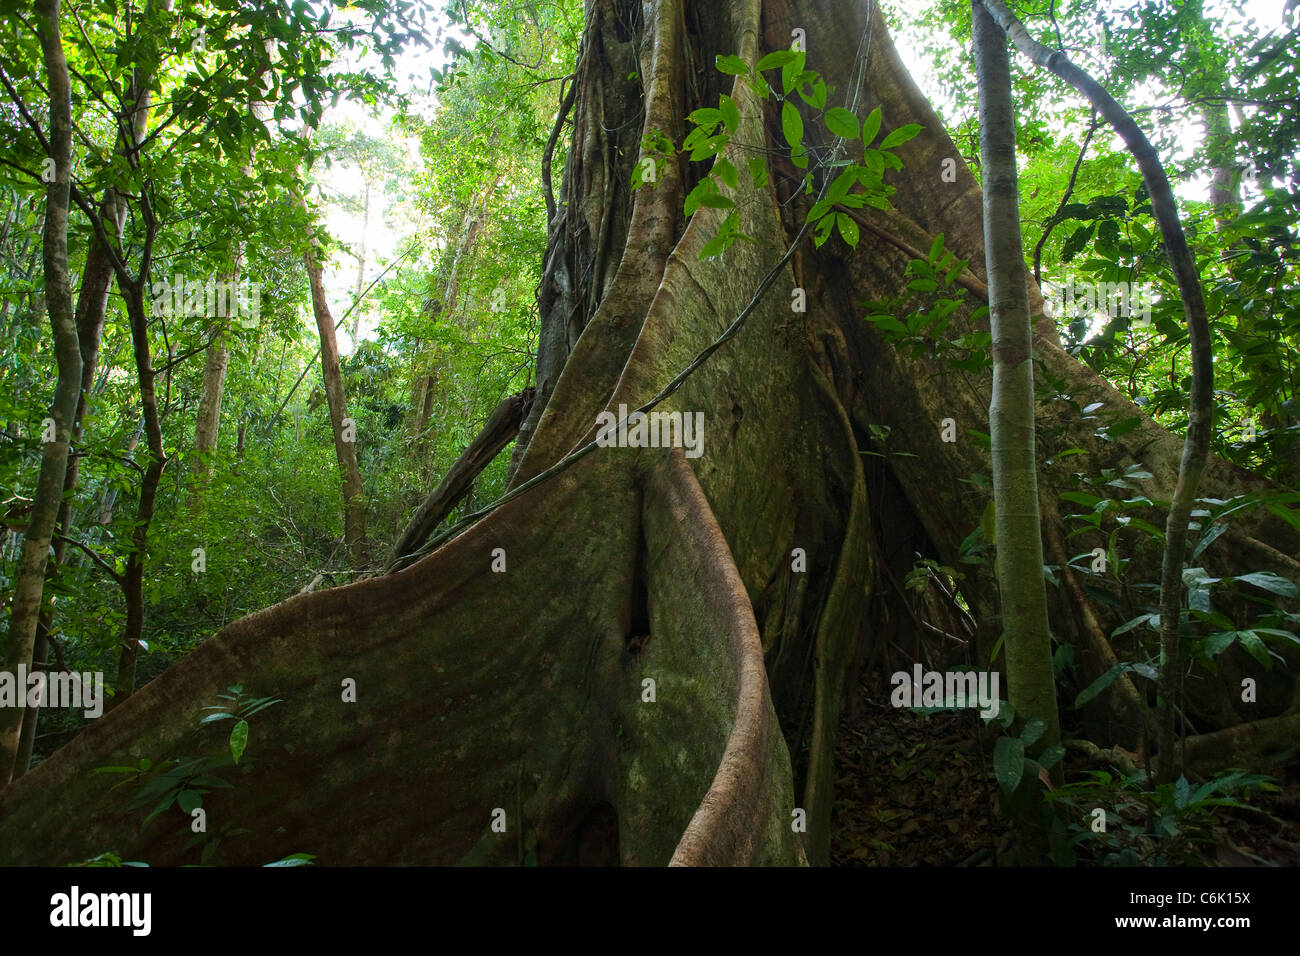 L'intérieur de la forêt tropicale montrant le contrefort racines d'un figuier (Ficus sp.) Parc national de Khao Sok, Thaïlande. Banque D'Images